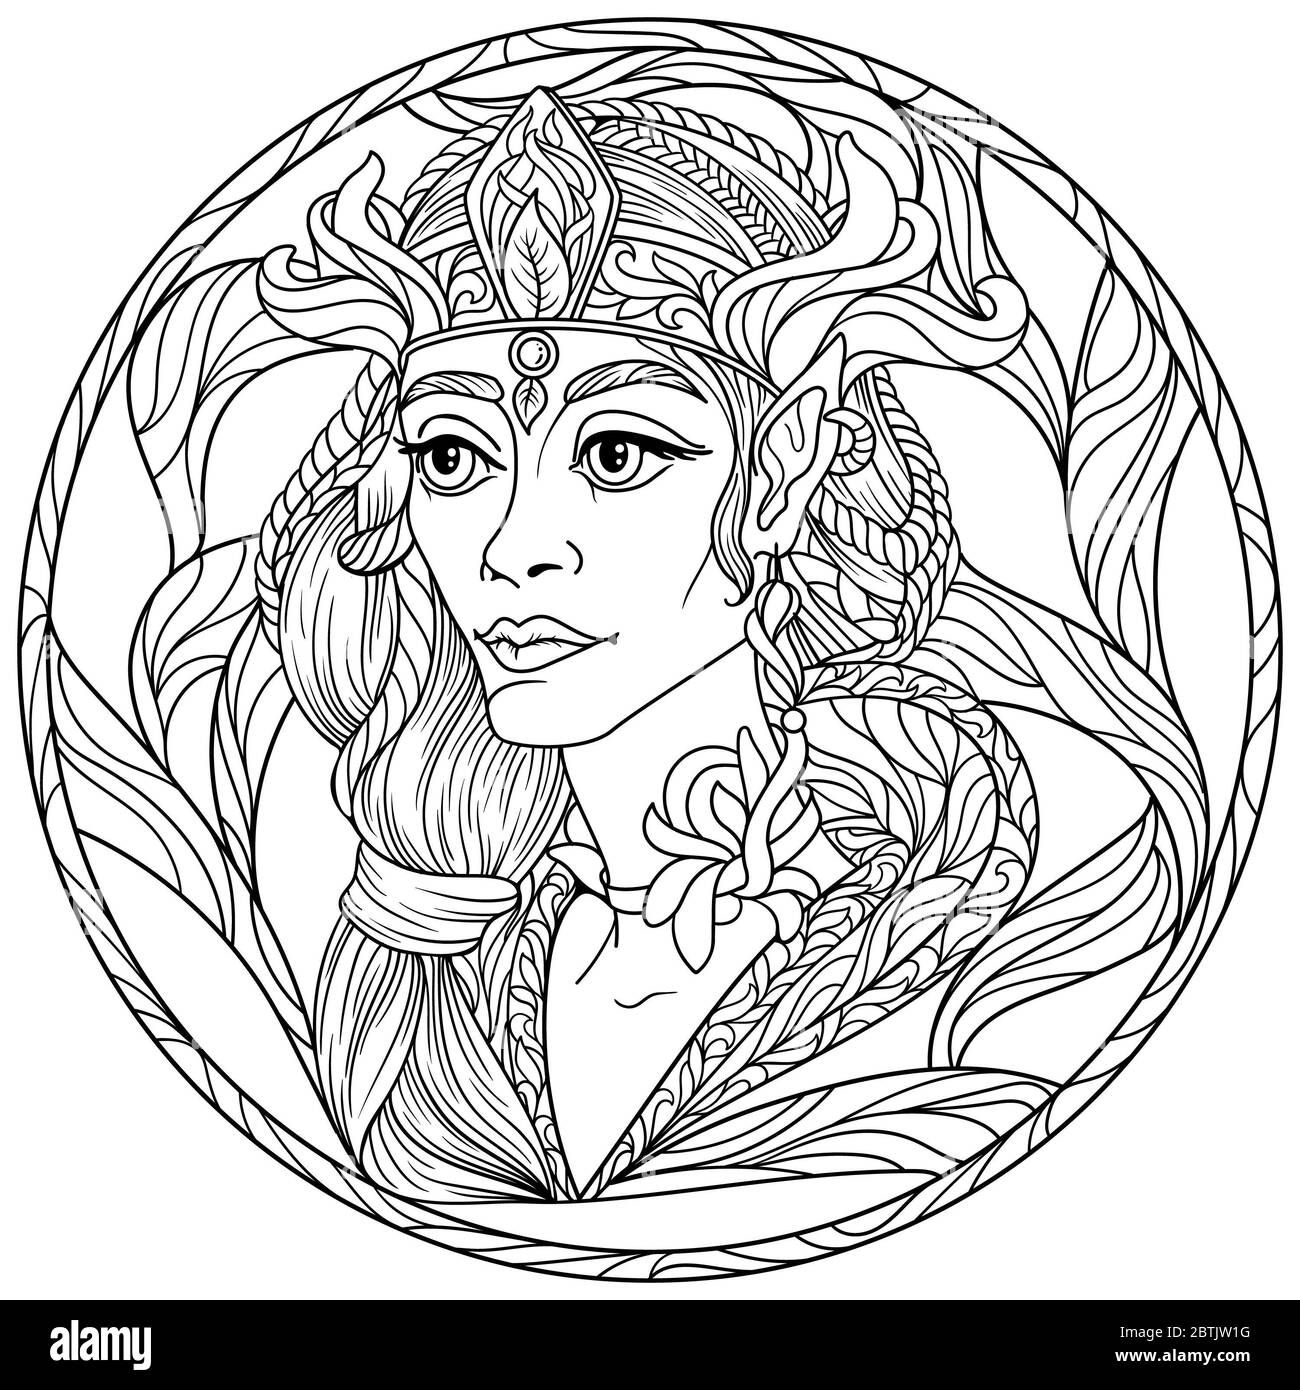 Zentangle fantaisie coloriage page pour adultes anti stress avec belle fille elf visage avec fond noir et blanc Banque D'Images